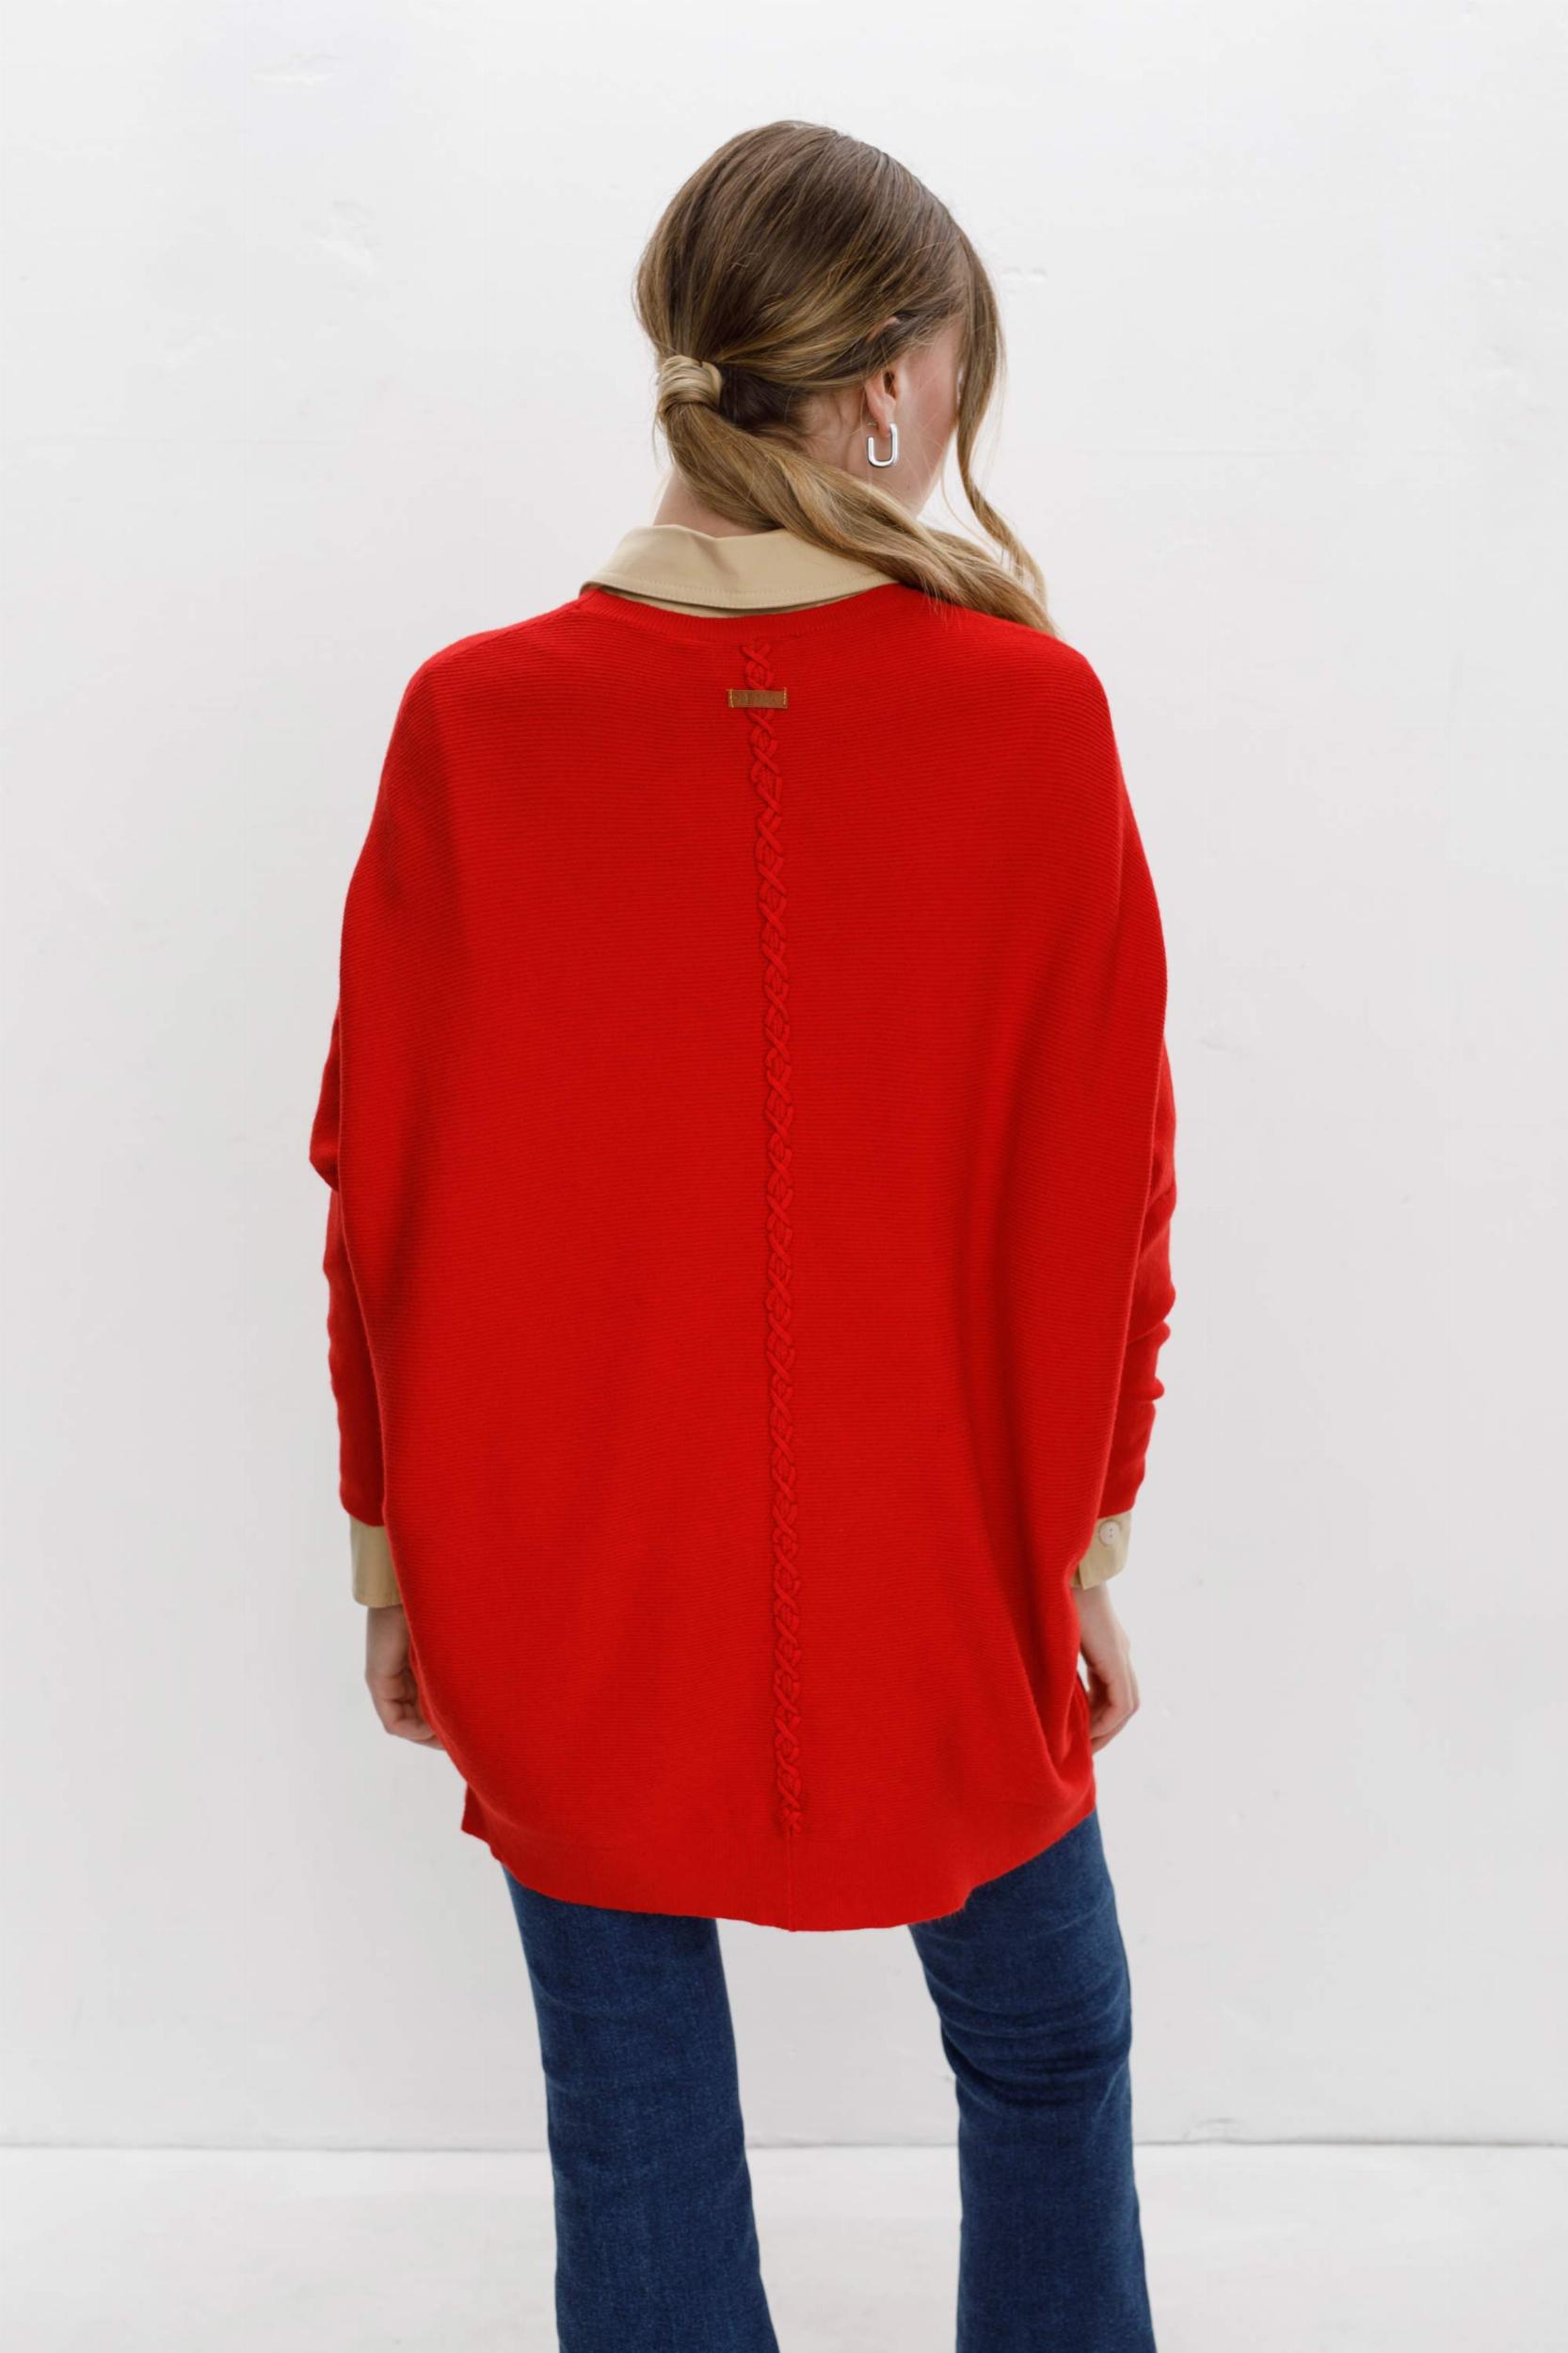 Sweater Narcizo rojo talle unico